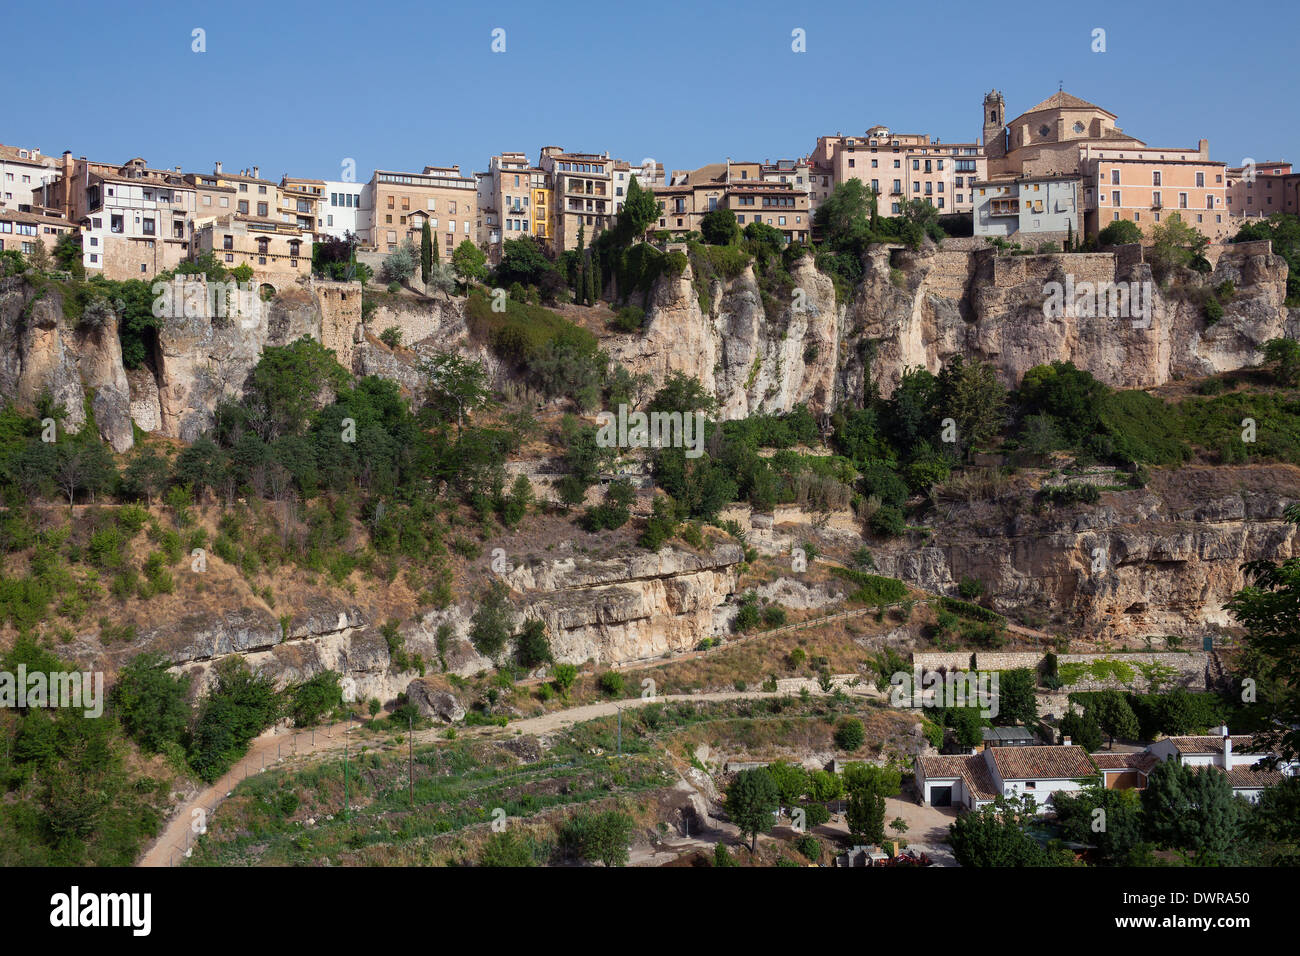 La ville de Cuenca dans la région de Castille-La Manche du centre de l'Espagne. Banque D'Images